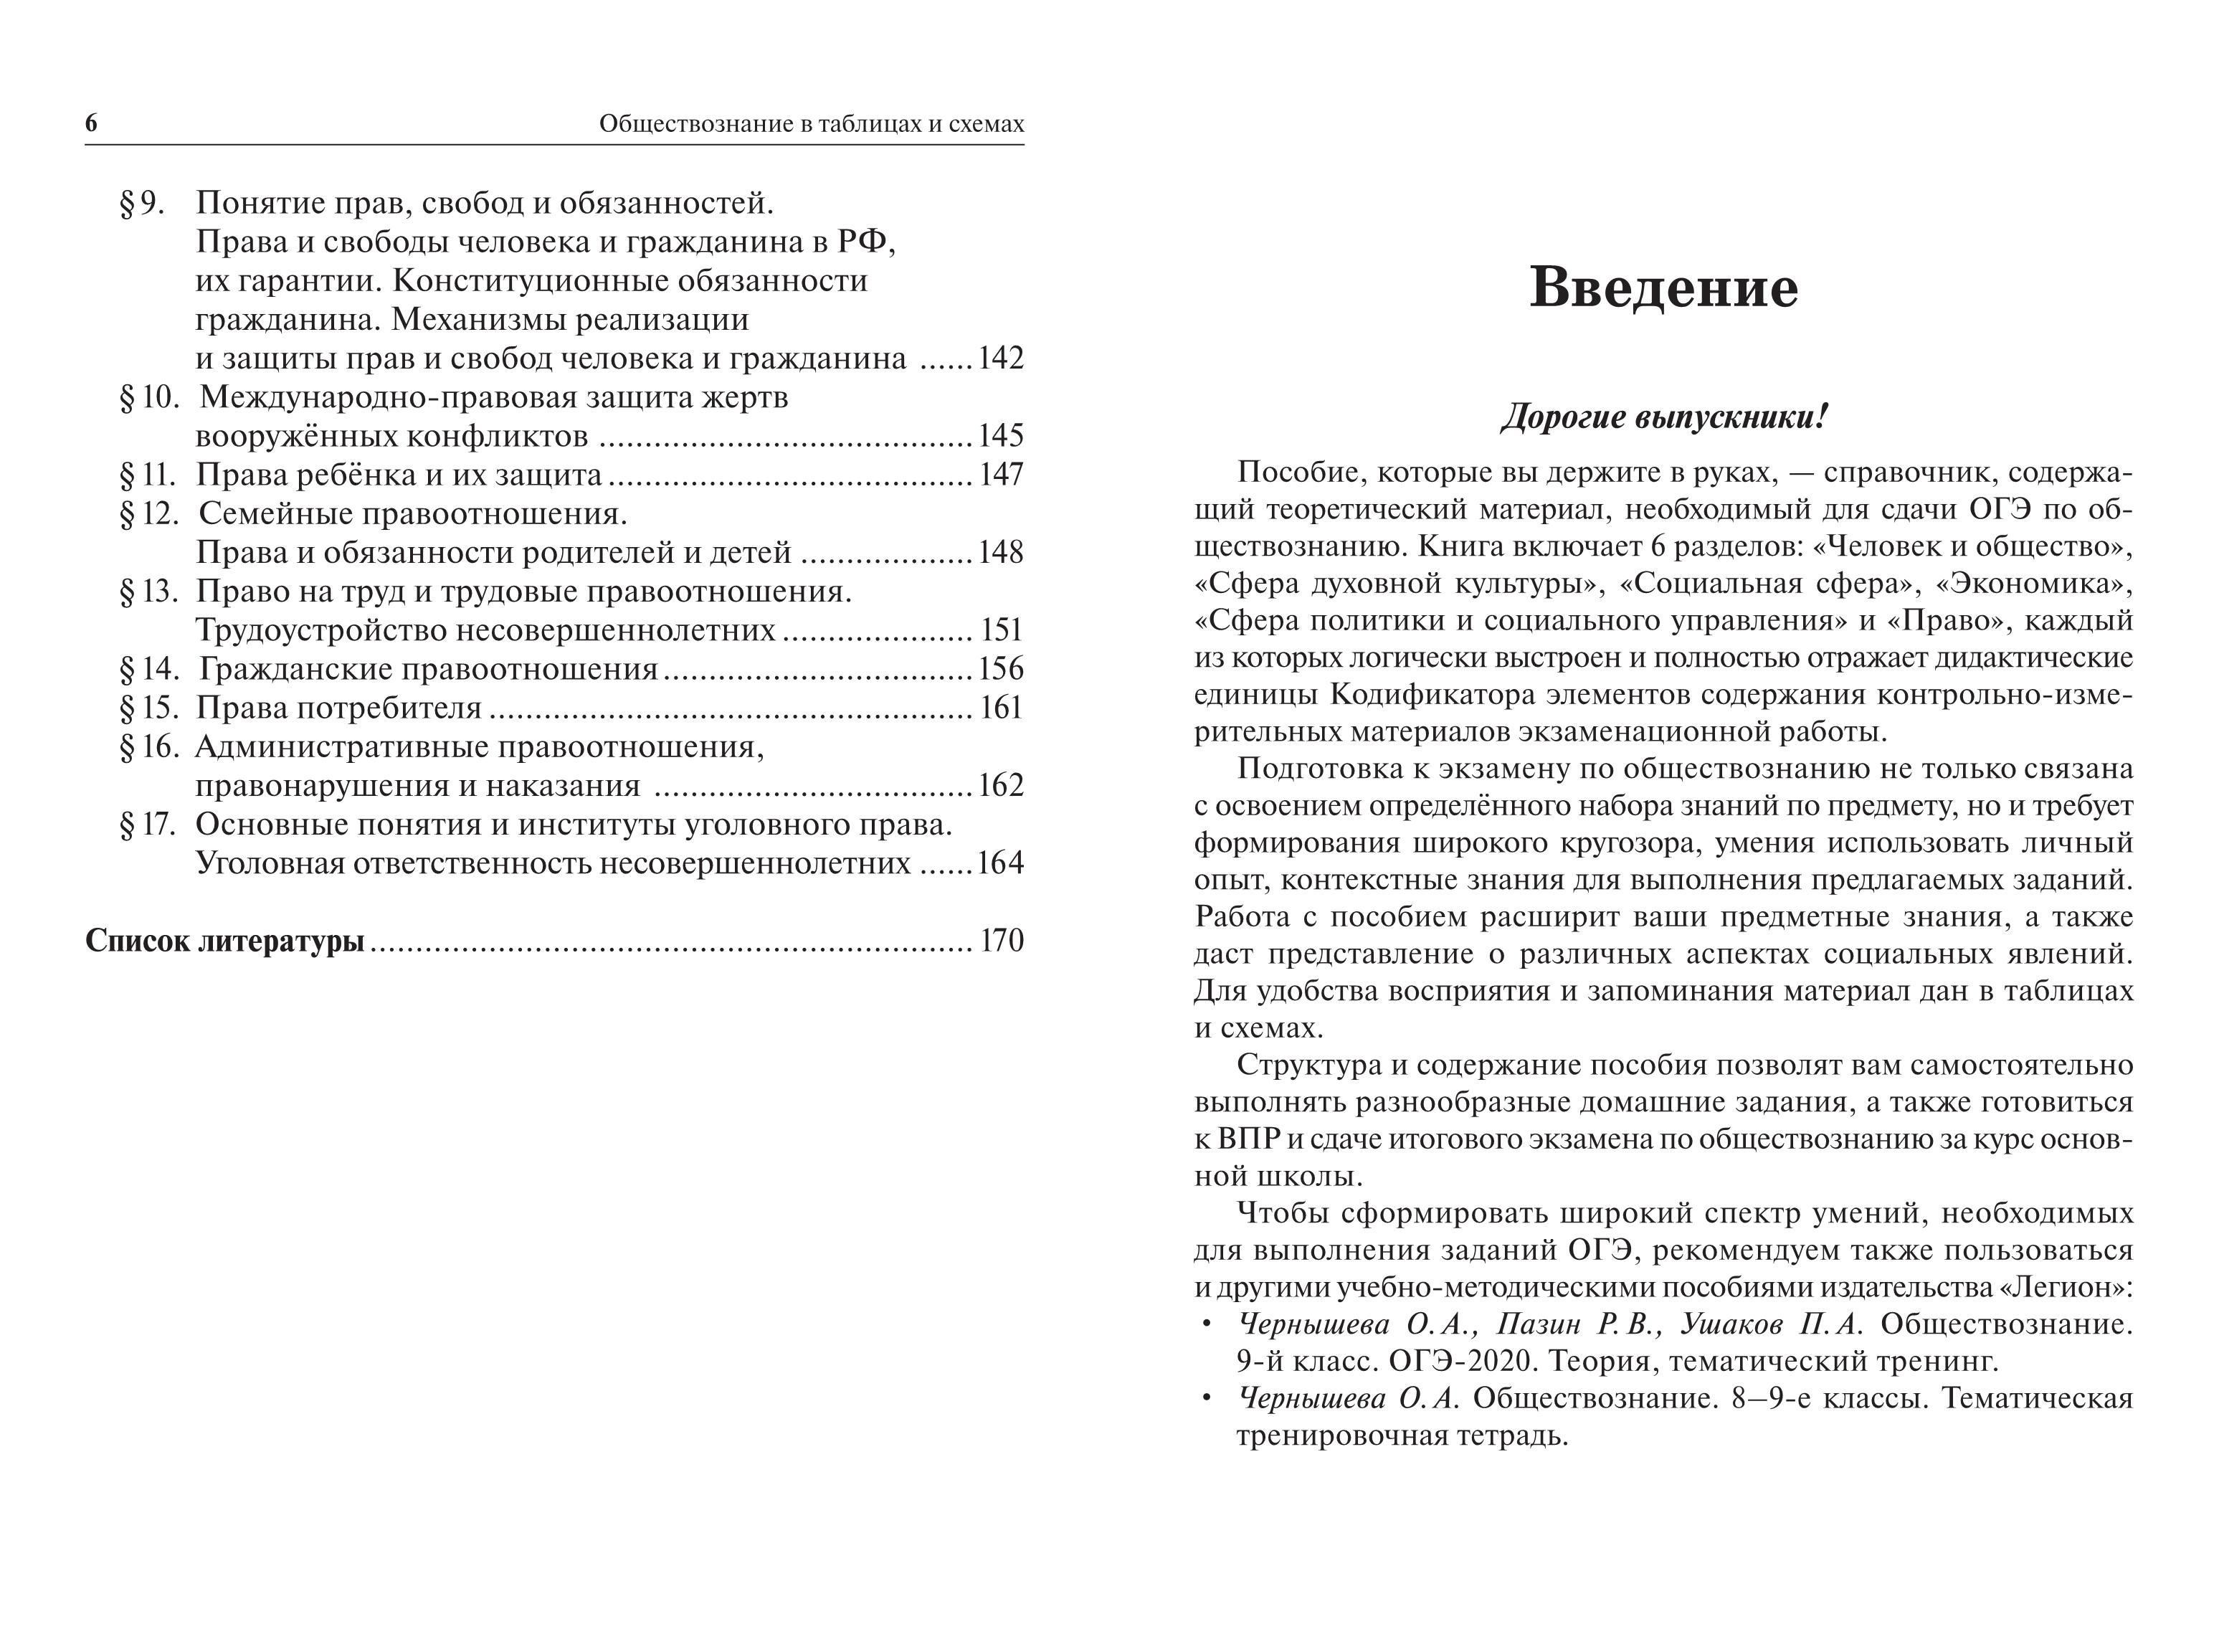 Обществознание в таблицах и схемах. ОГЭ. 9 класс. 3-е изд.